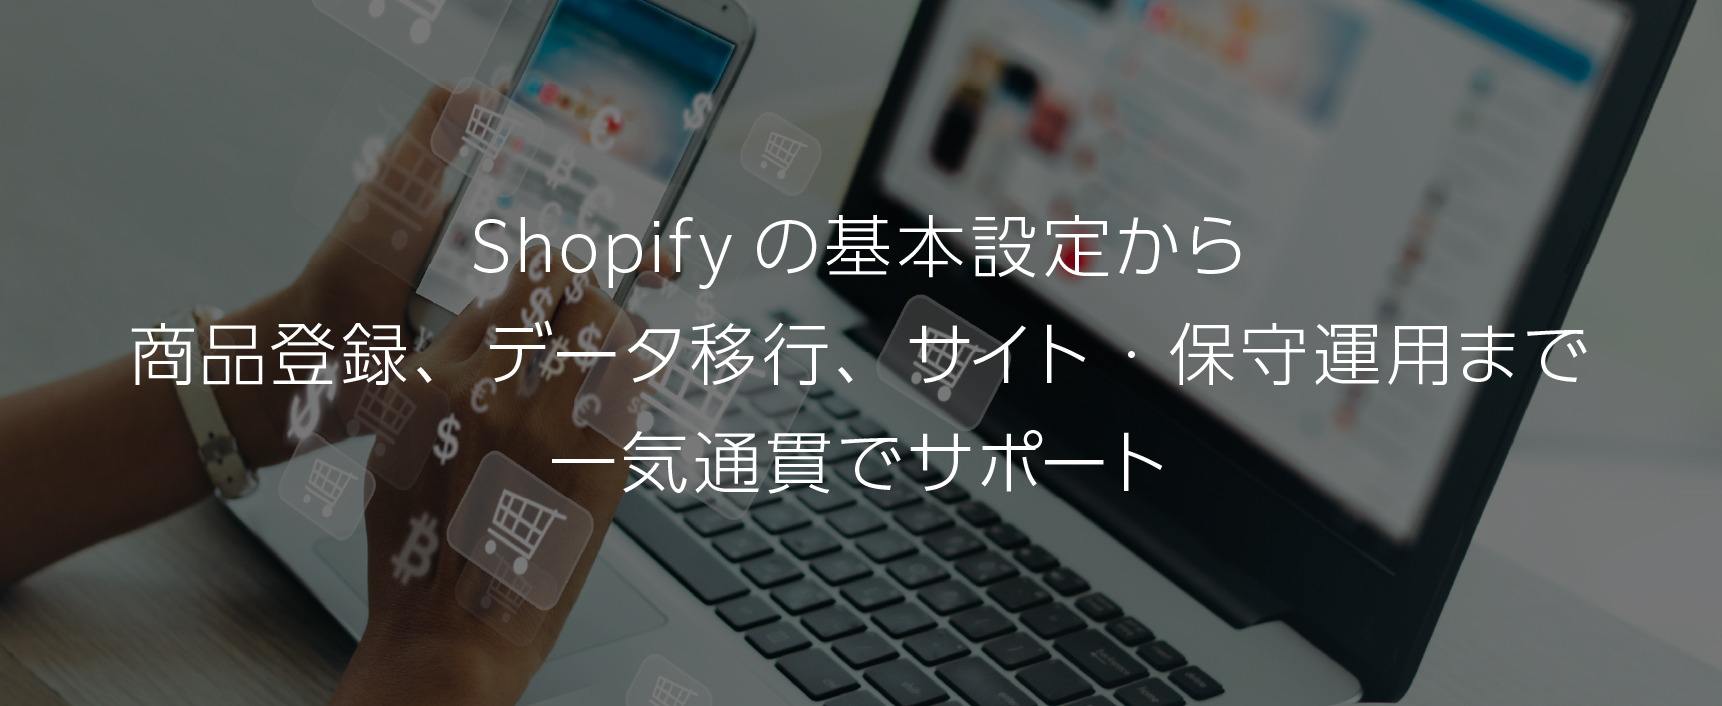 shopifyを活用したECサイト構築プラン